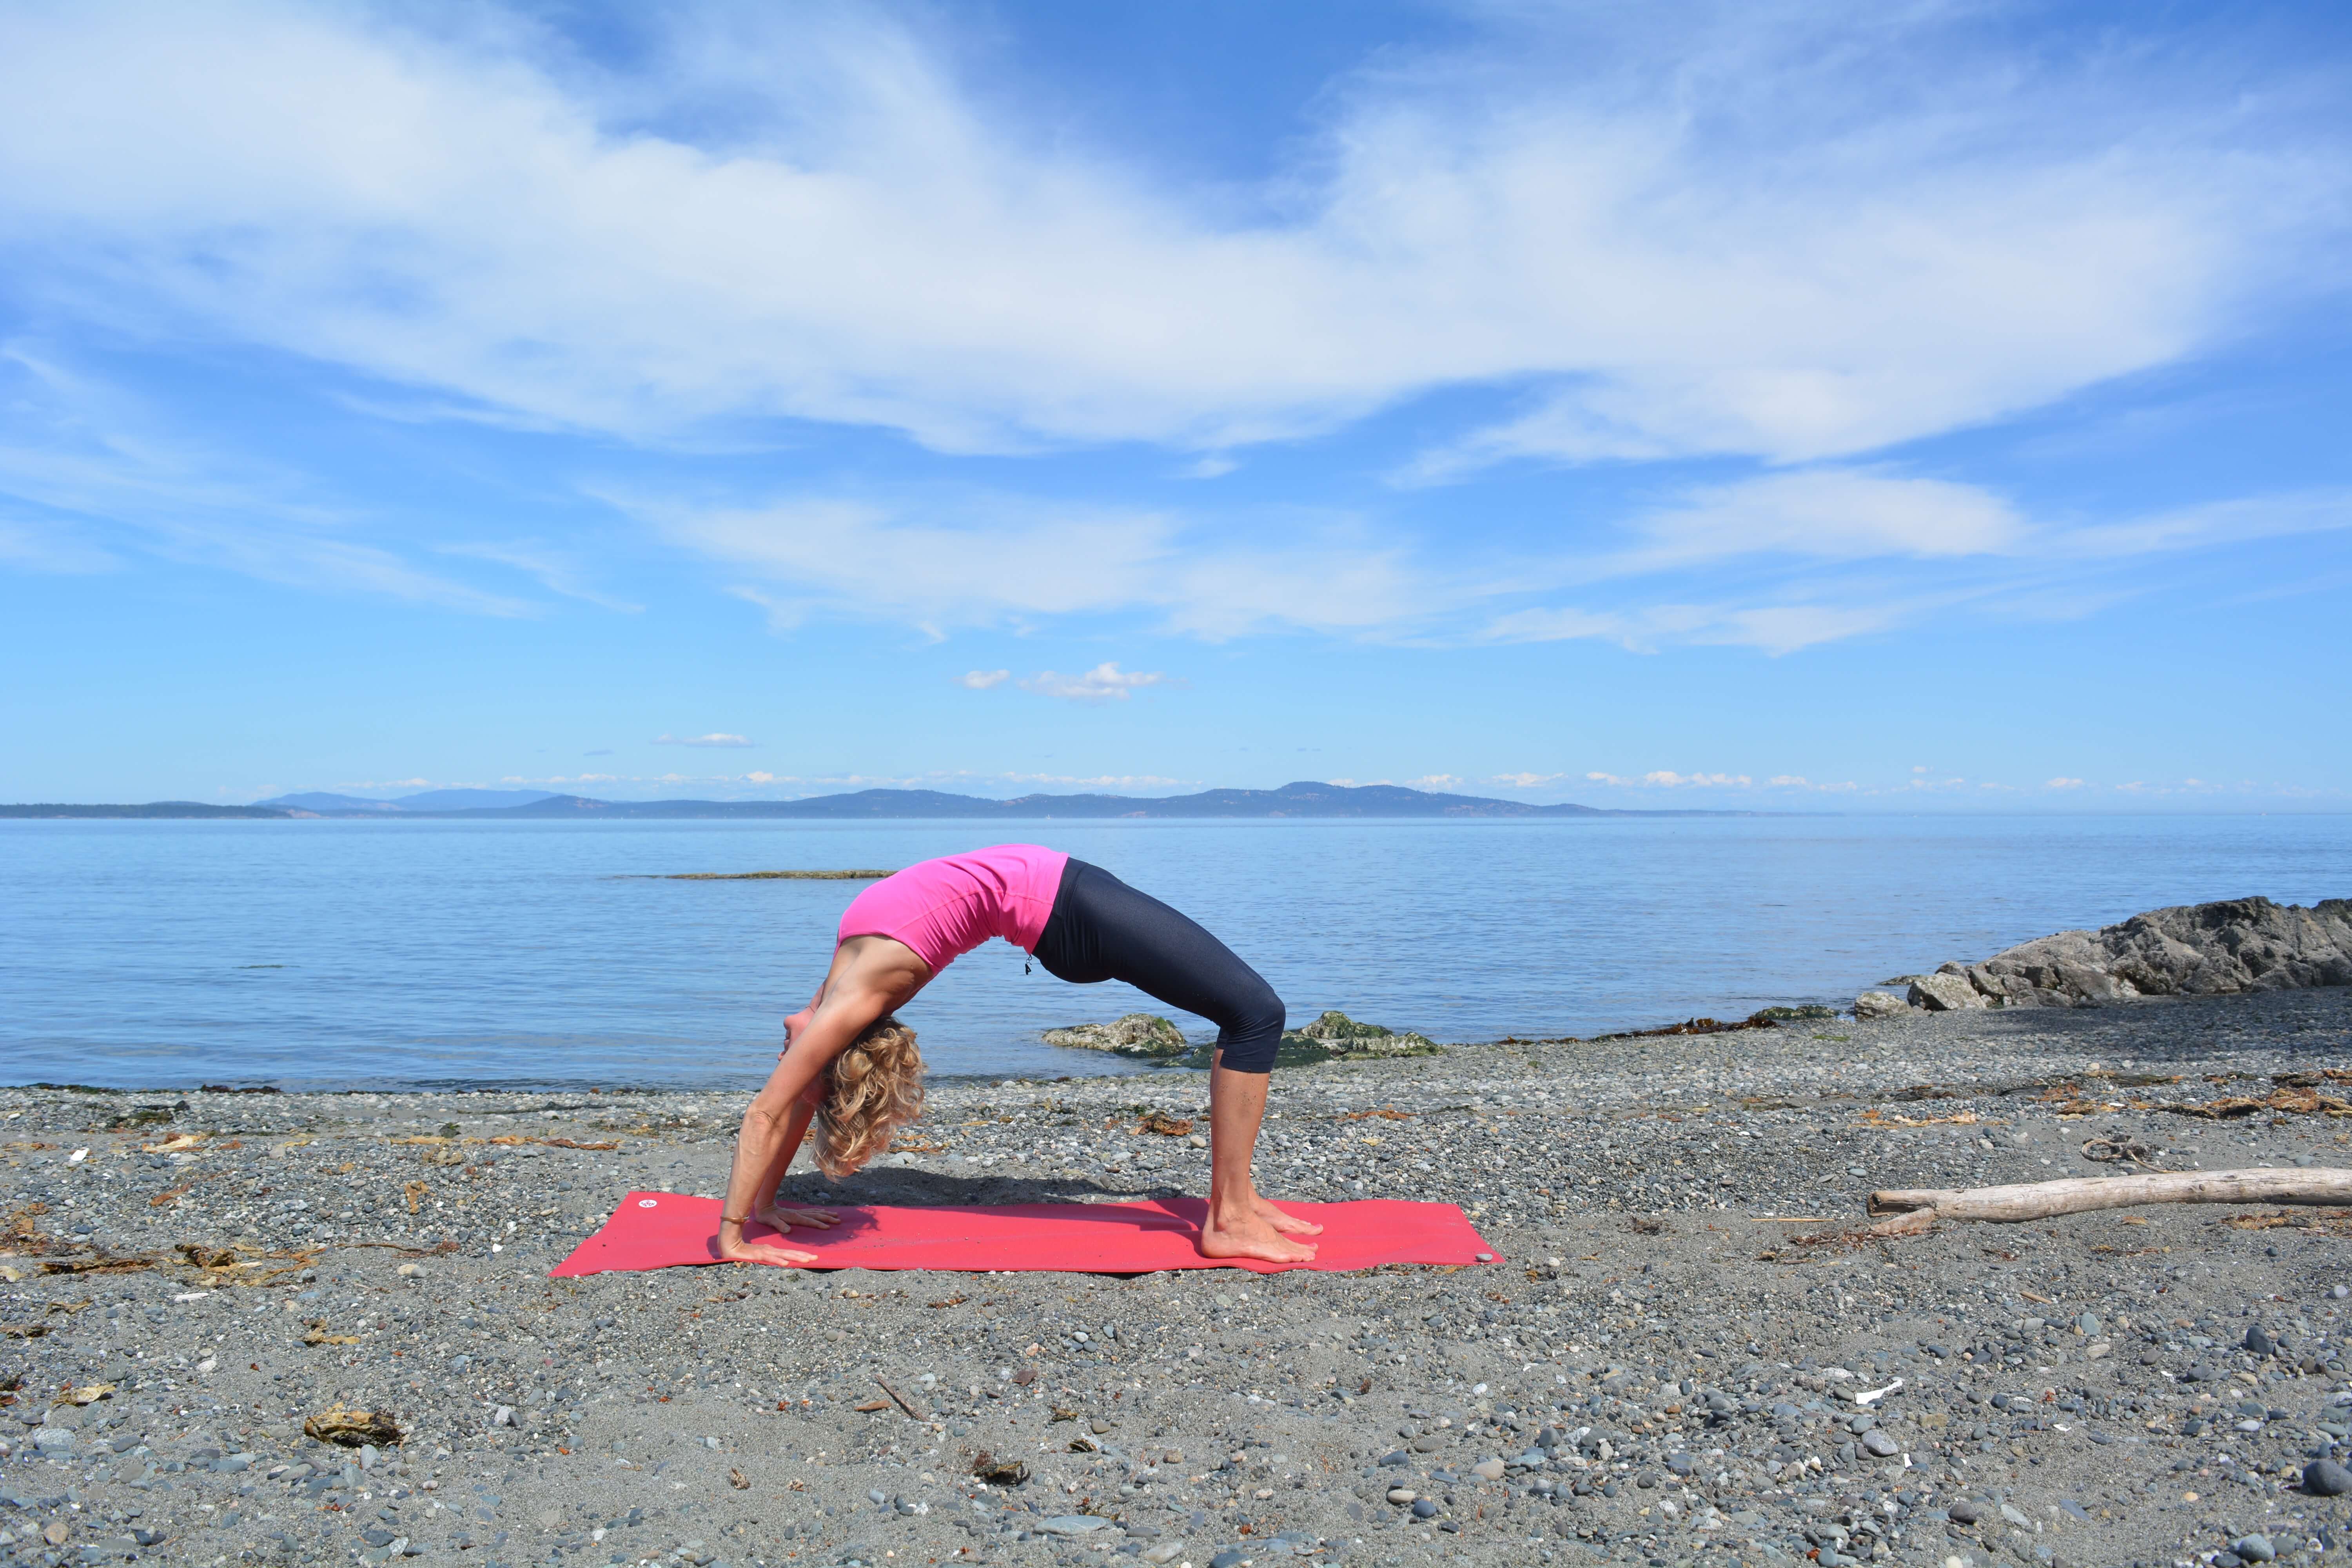 Yoga Anatomy: Urdhva Dhanurasana (Upward Facing Bow Pose)